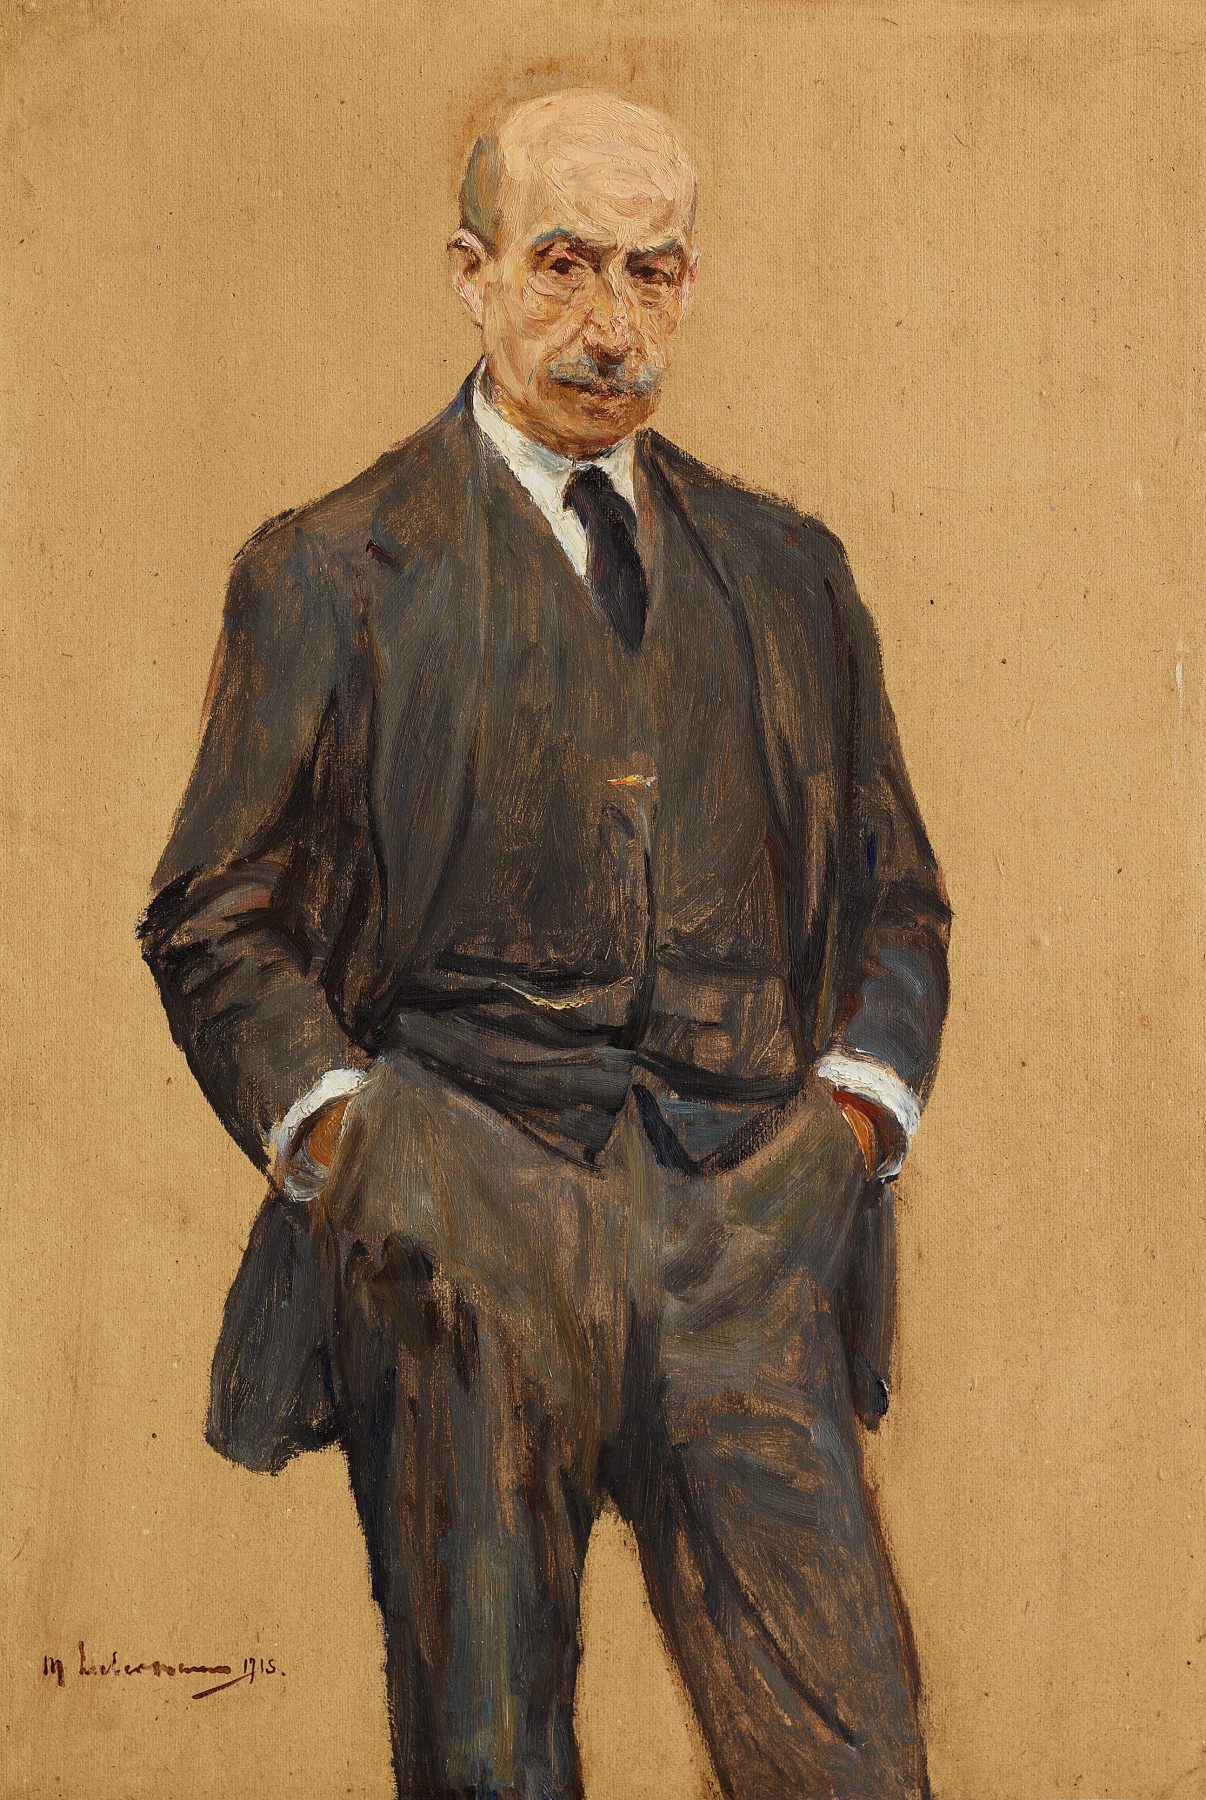 Zu sehen ist ein Selbstbildnis von Max Liebermann. Er steht im dunklen Anzug vor einem brauenen Hintergrund, die Hände in den Hosentaschen